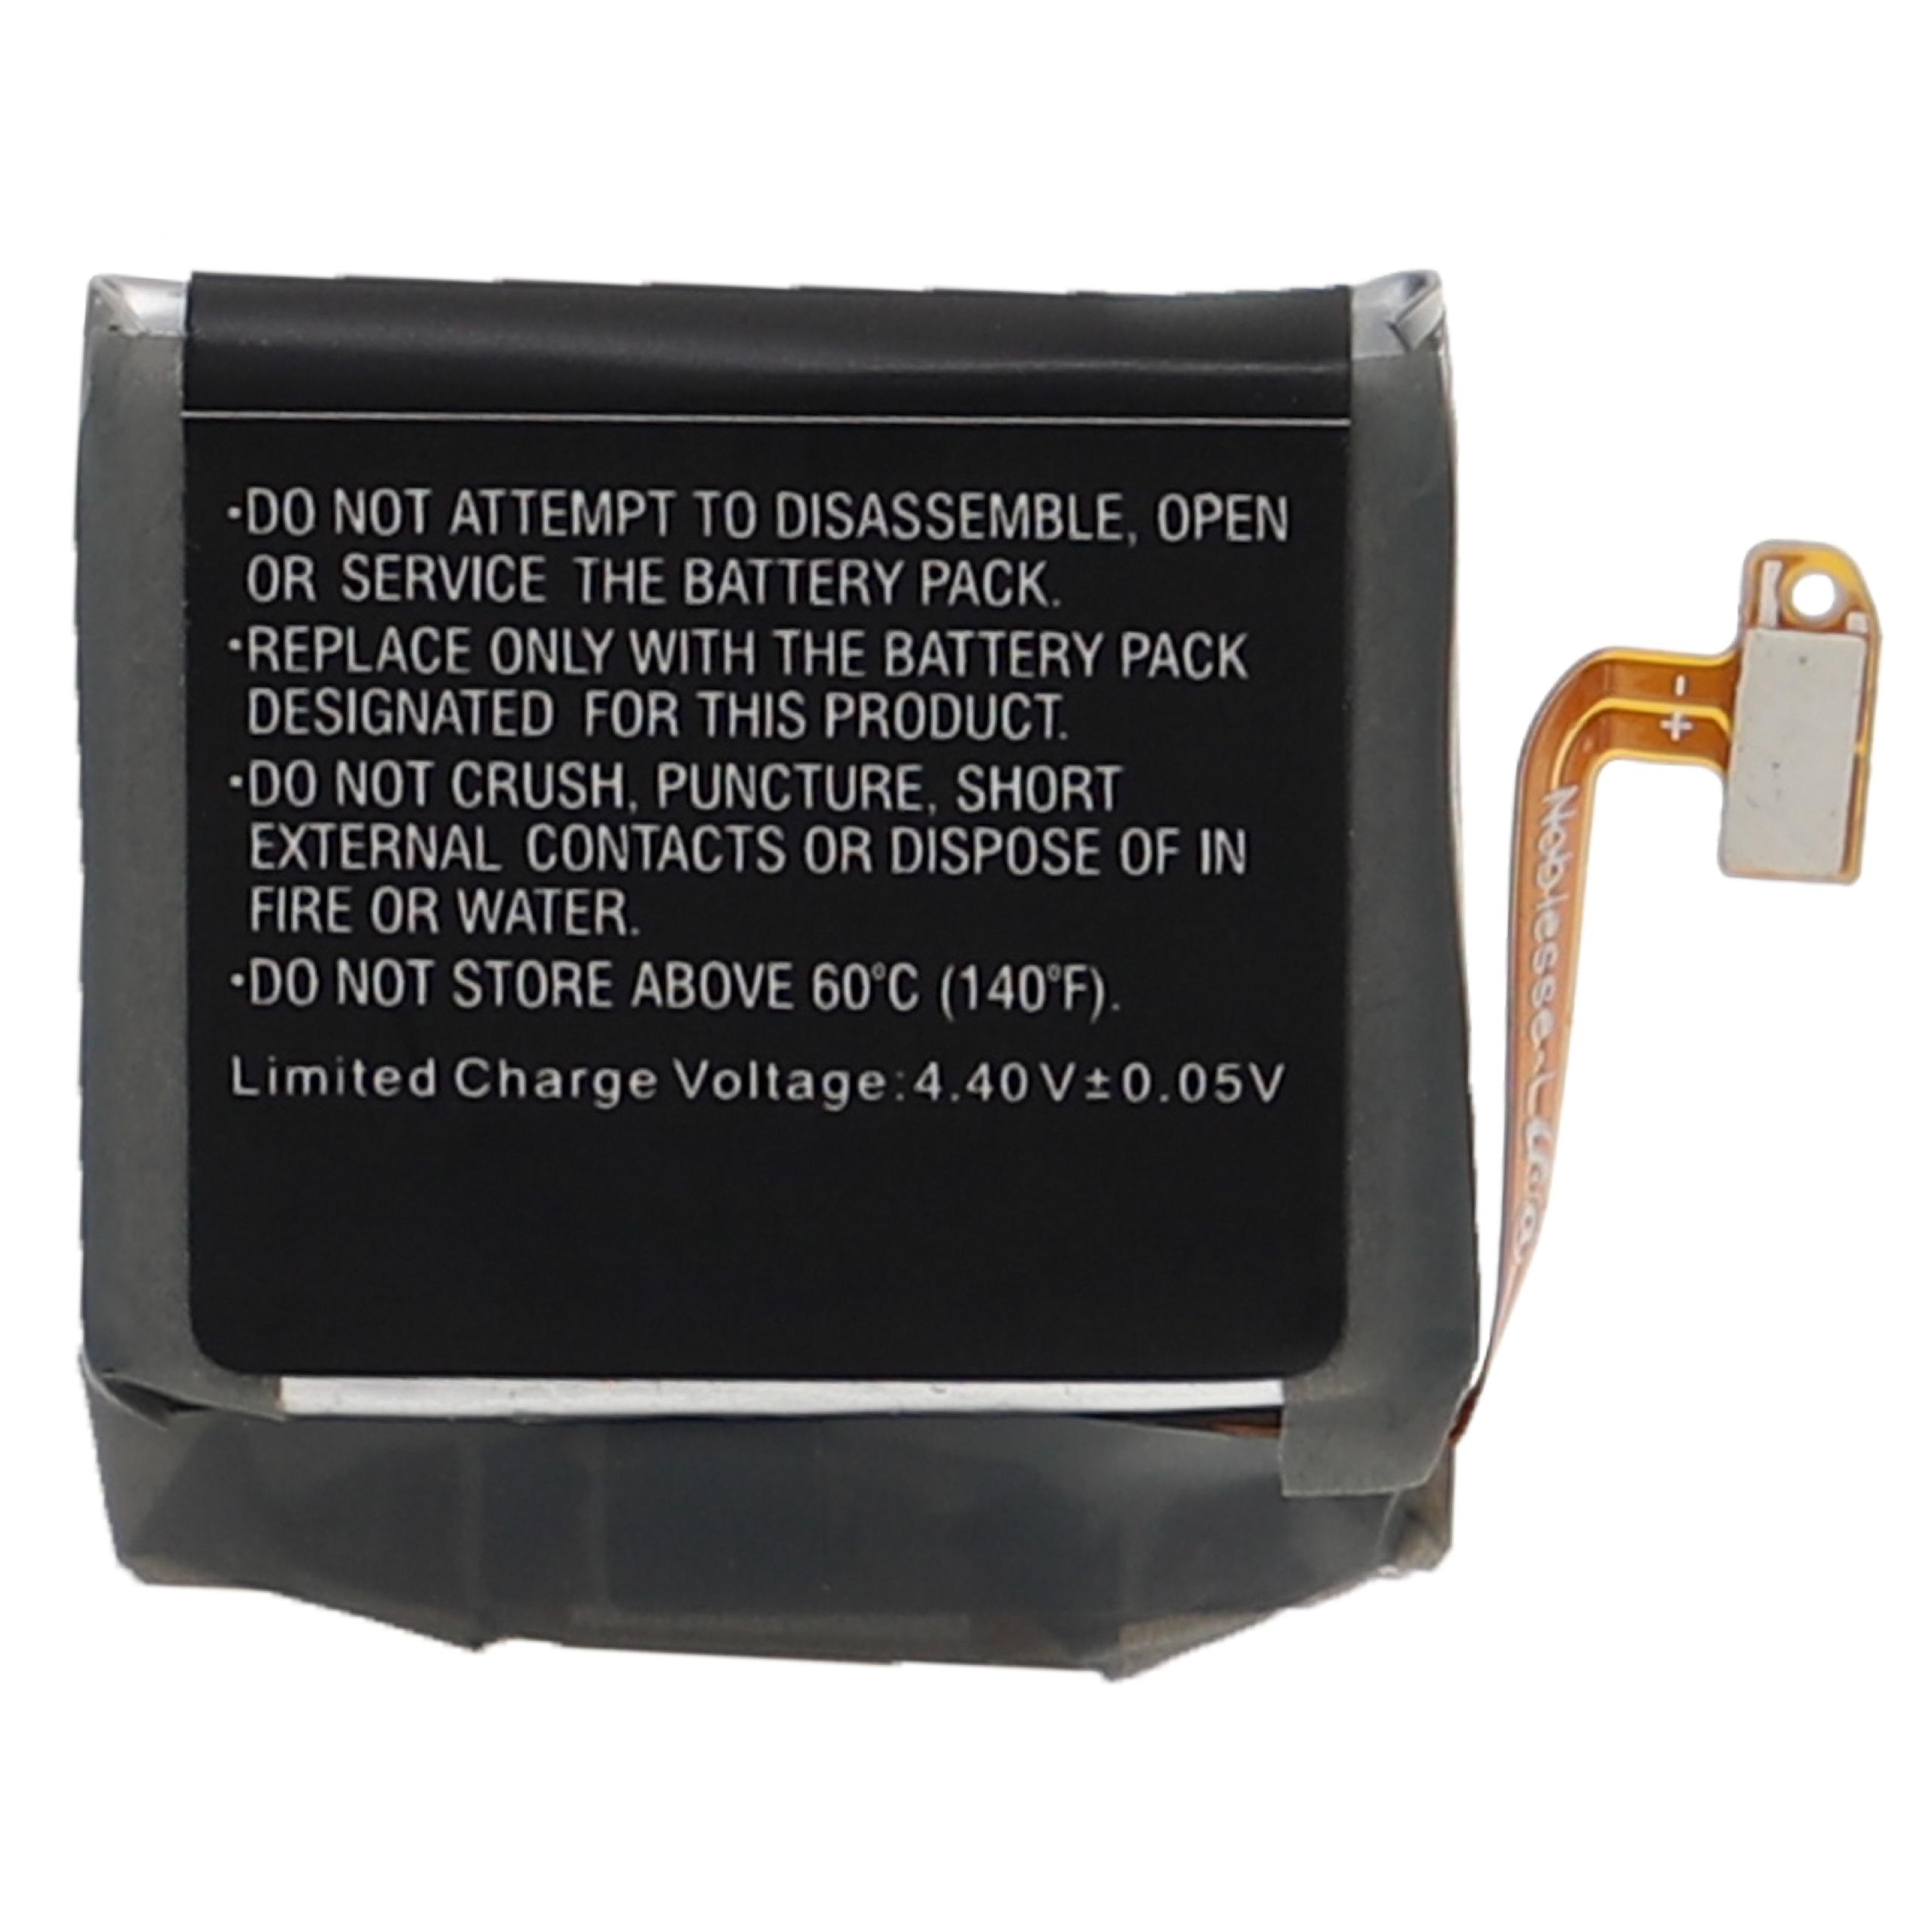 Akumulator do smartwatch / opaski fitness zamiennik Samsung EB-BR840ABY, GH43-05011A - 330 mAh 3,85 V LiPo